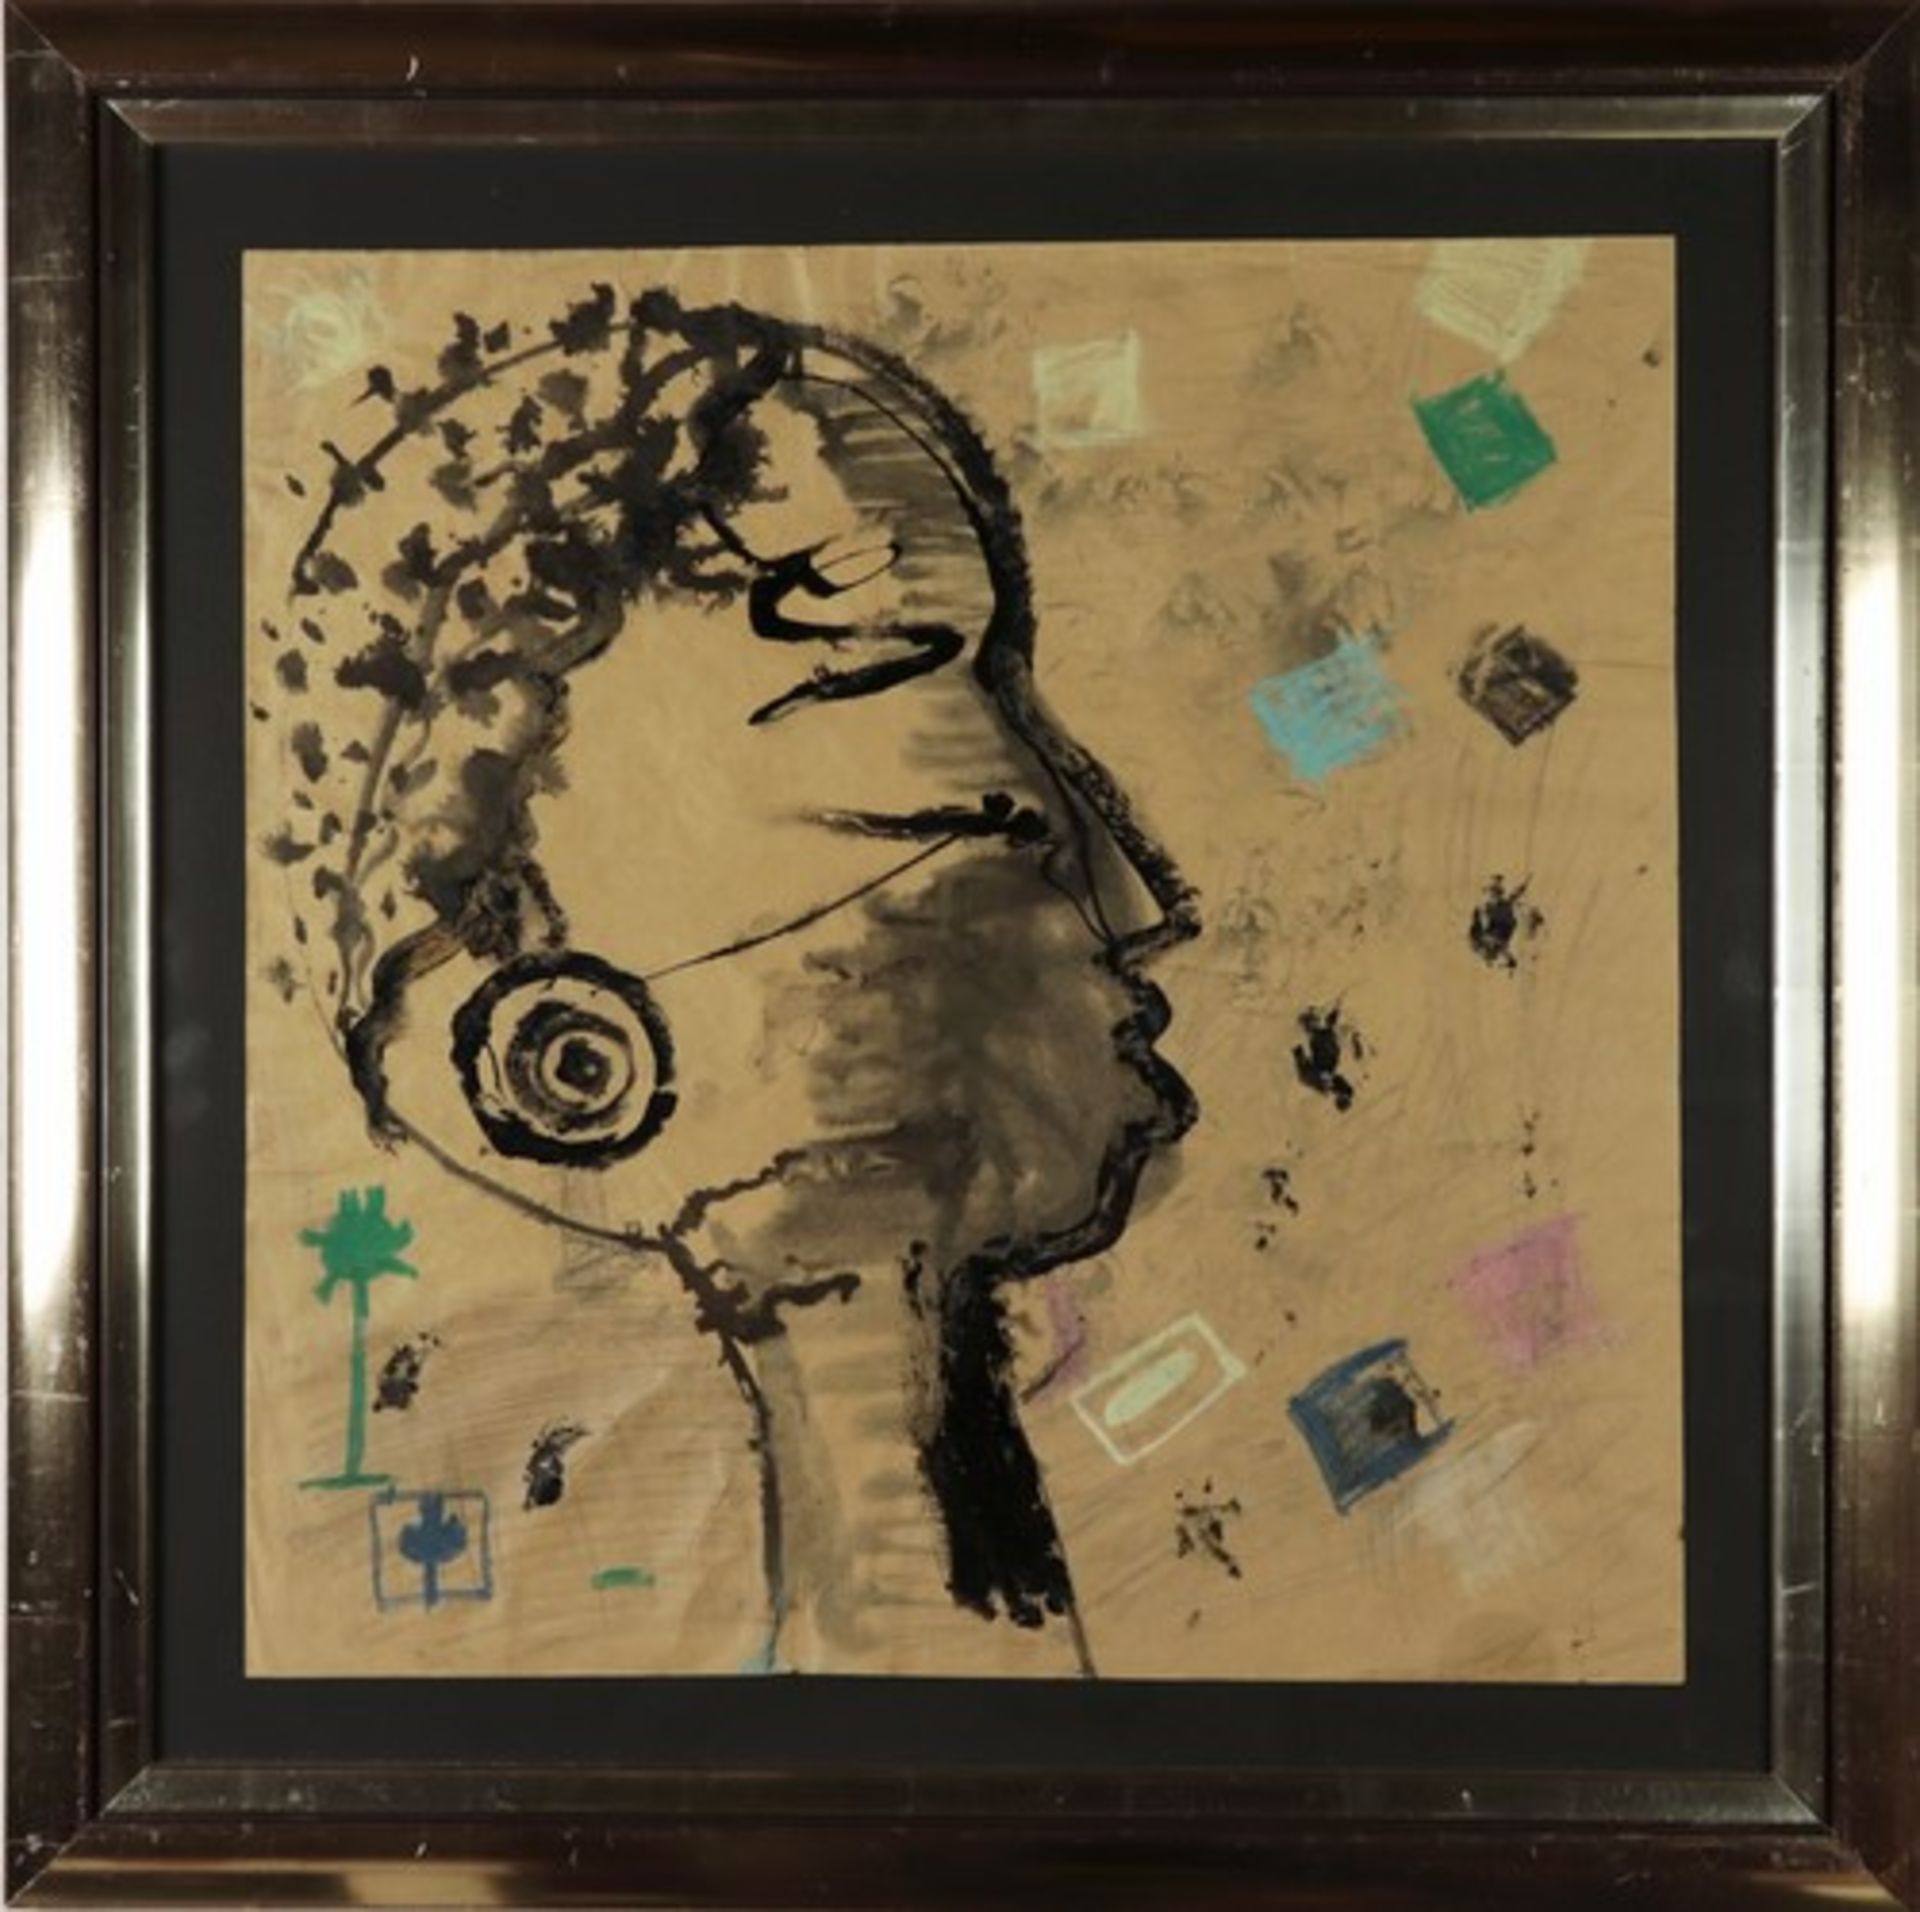 Shayama, Kamalzeitgenössischer Künstler, 2008 1. Ausstellung in New York, "Kopf einer jungen